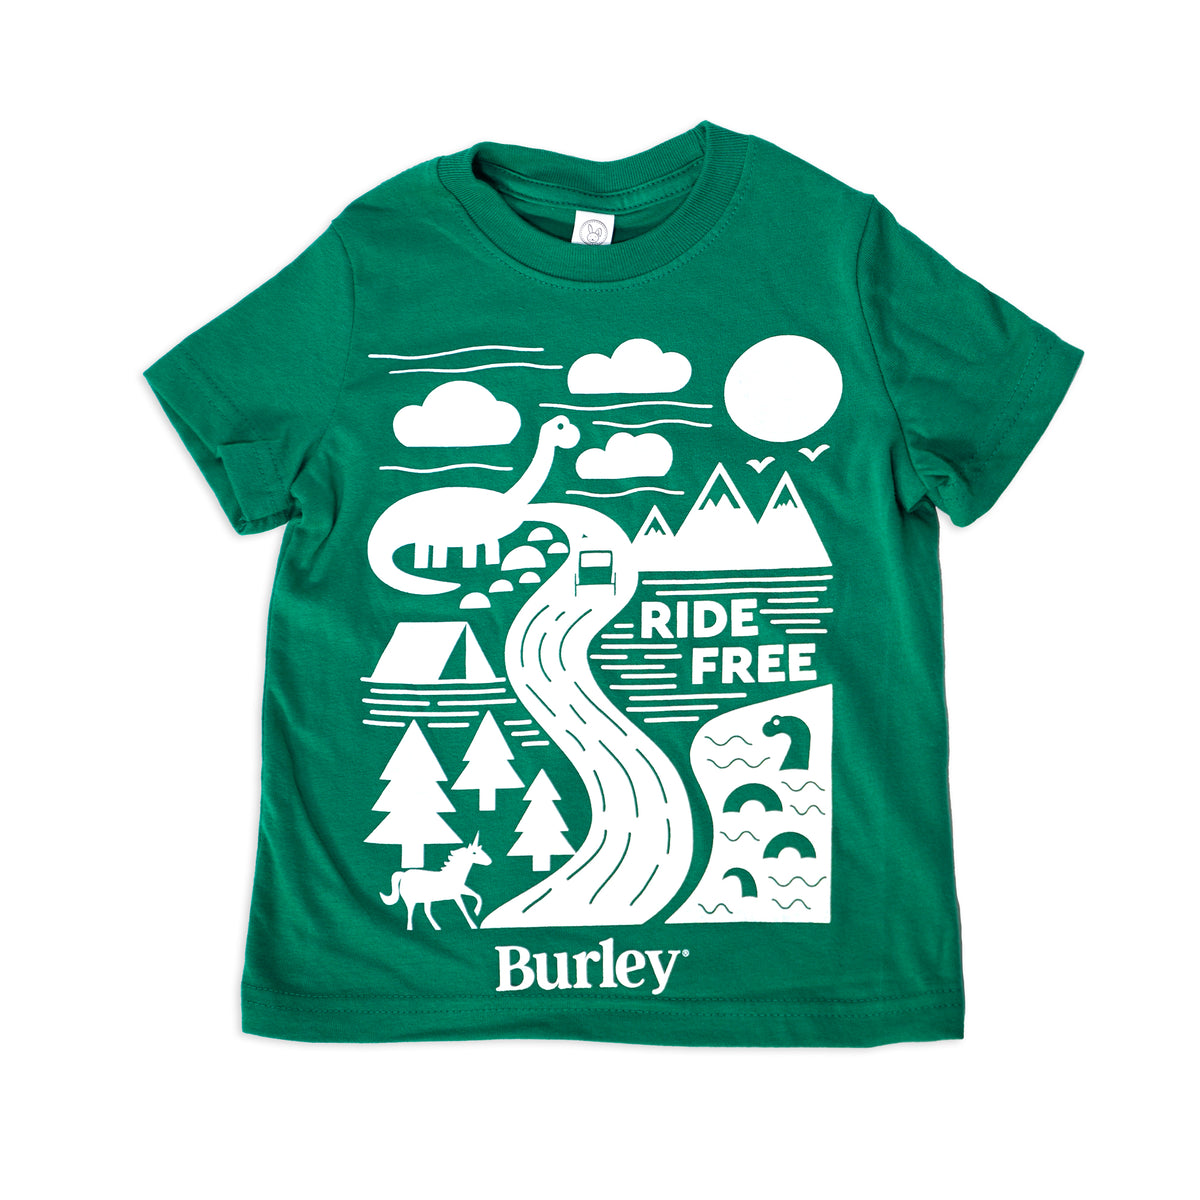 Burley Ride Free Toddler Shirt, Green